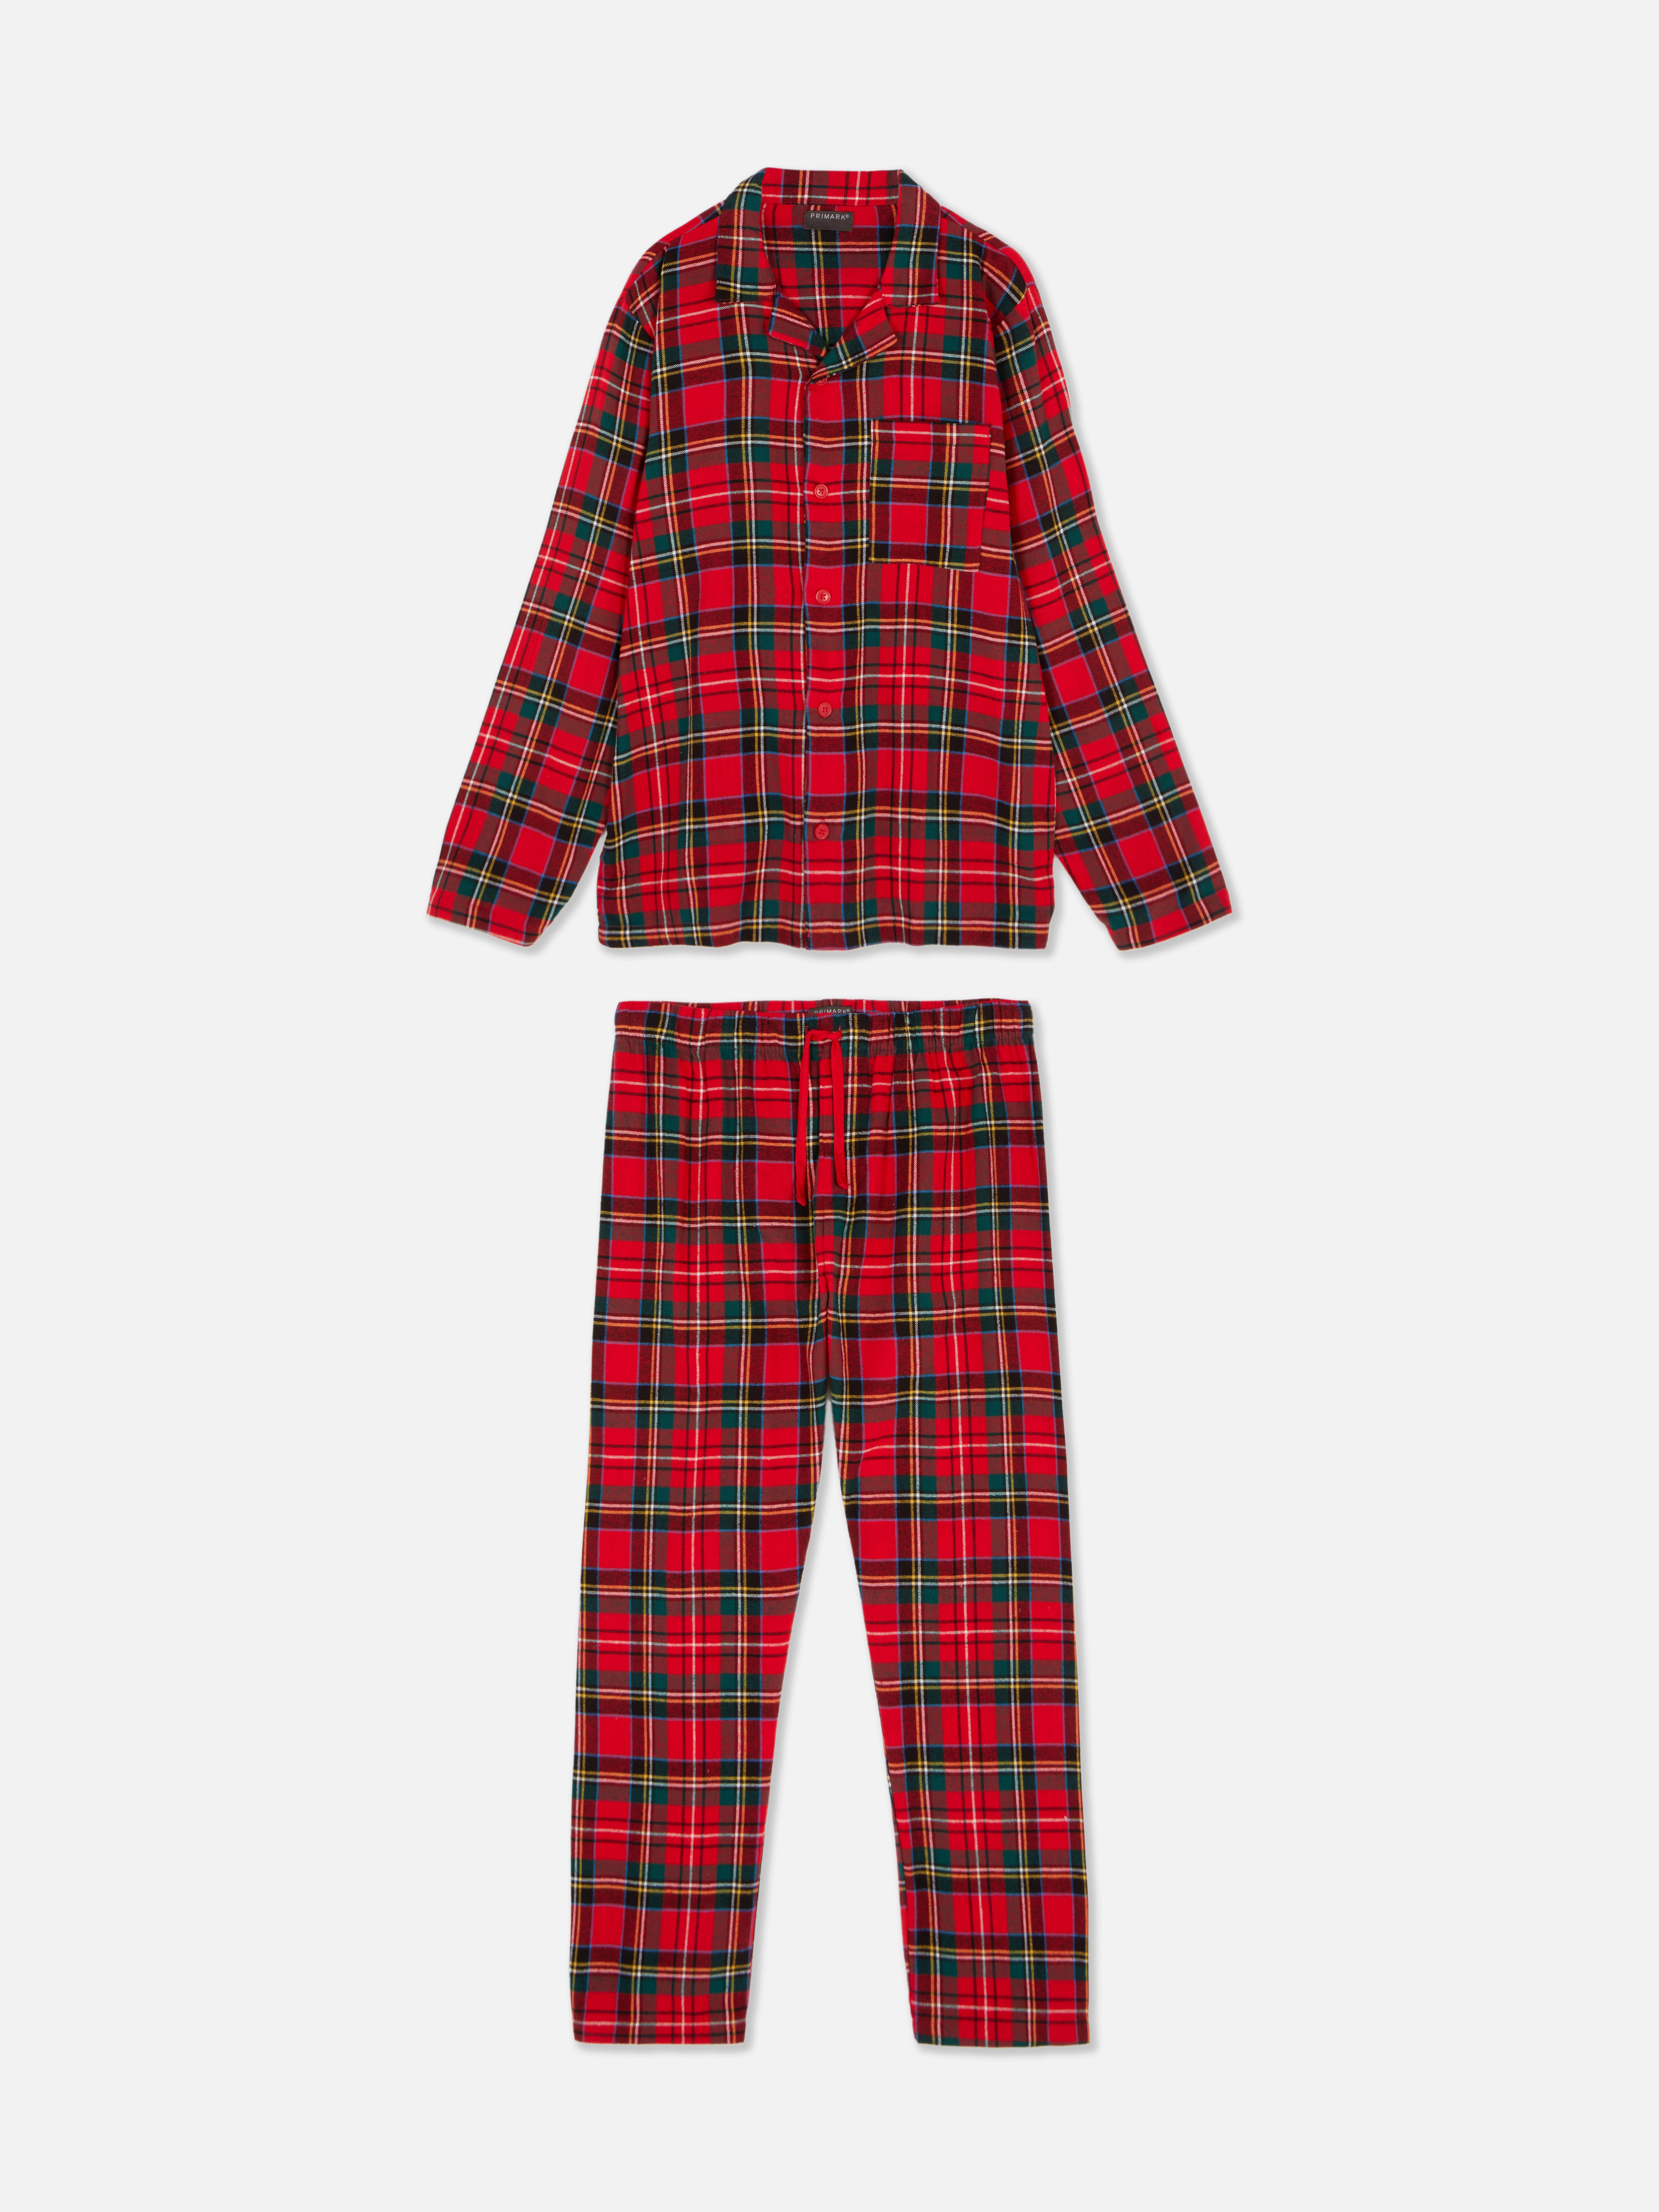 Men’s Check Christmas Family Pyjamas